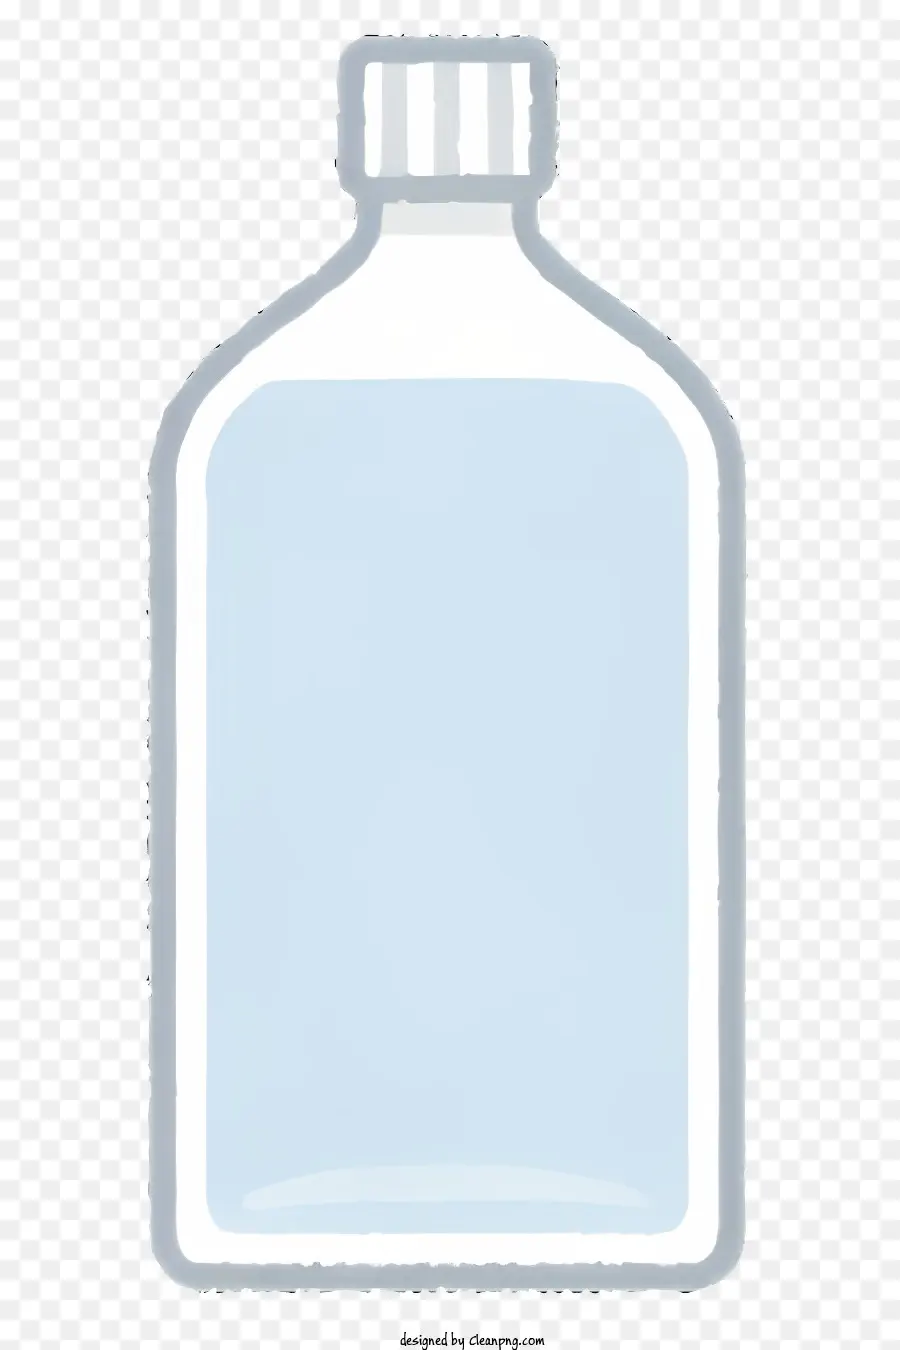 Clipart Clear Plastic Bottle Blue Liquid Transparent Bottle Materiale plastico - Blottiglia di plastica trasparente con liquido blu all'interno